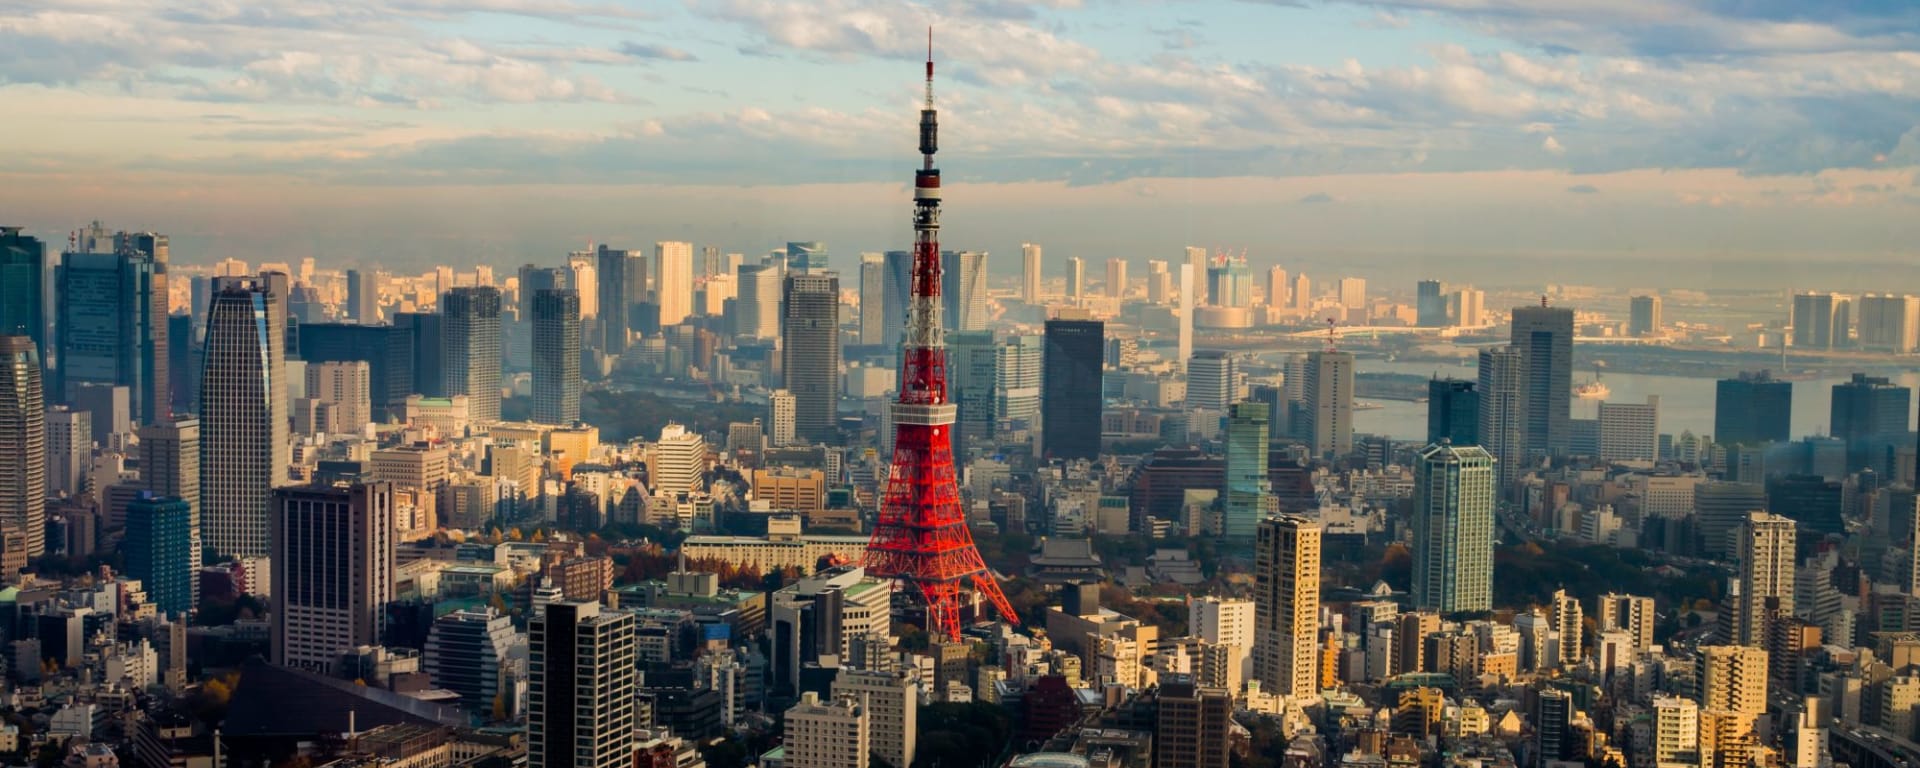 Contrastes du Japon de Tokyo: Tokyo: City view with Tower